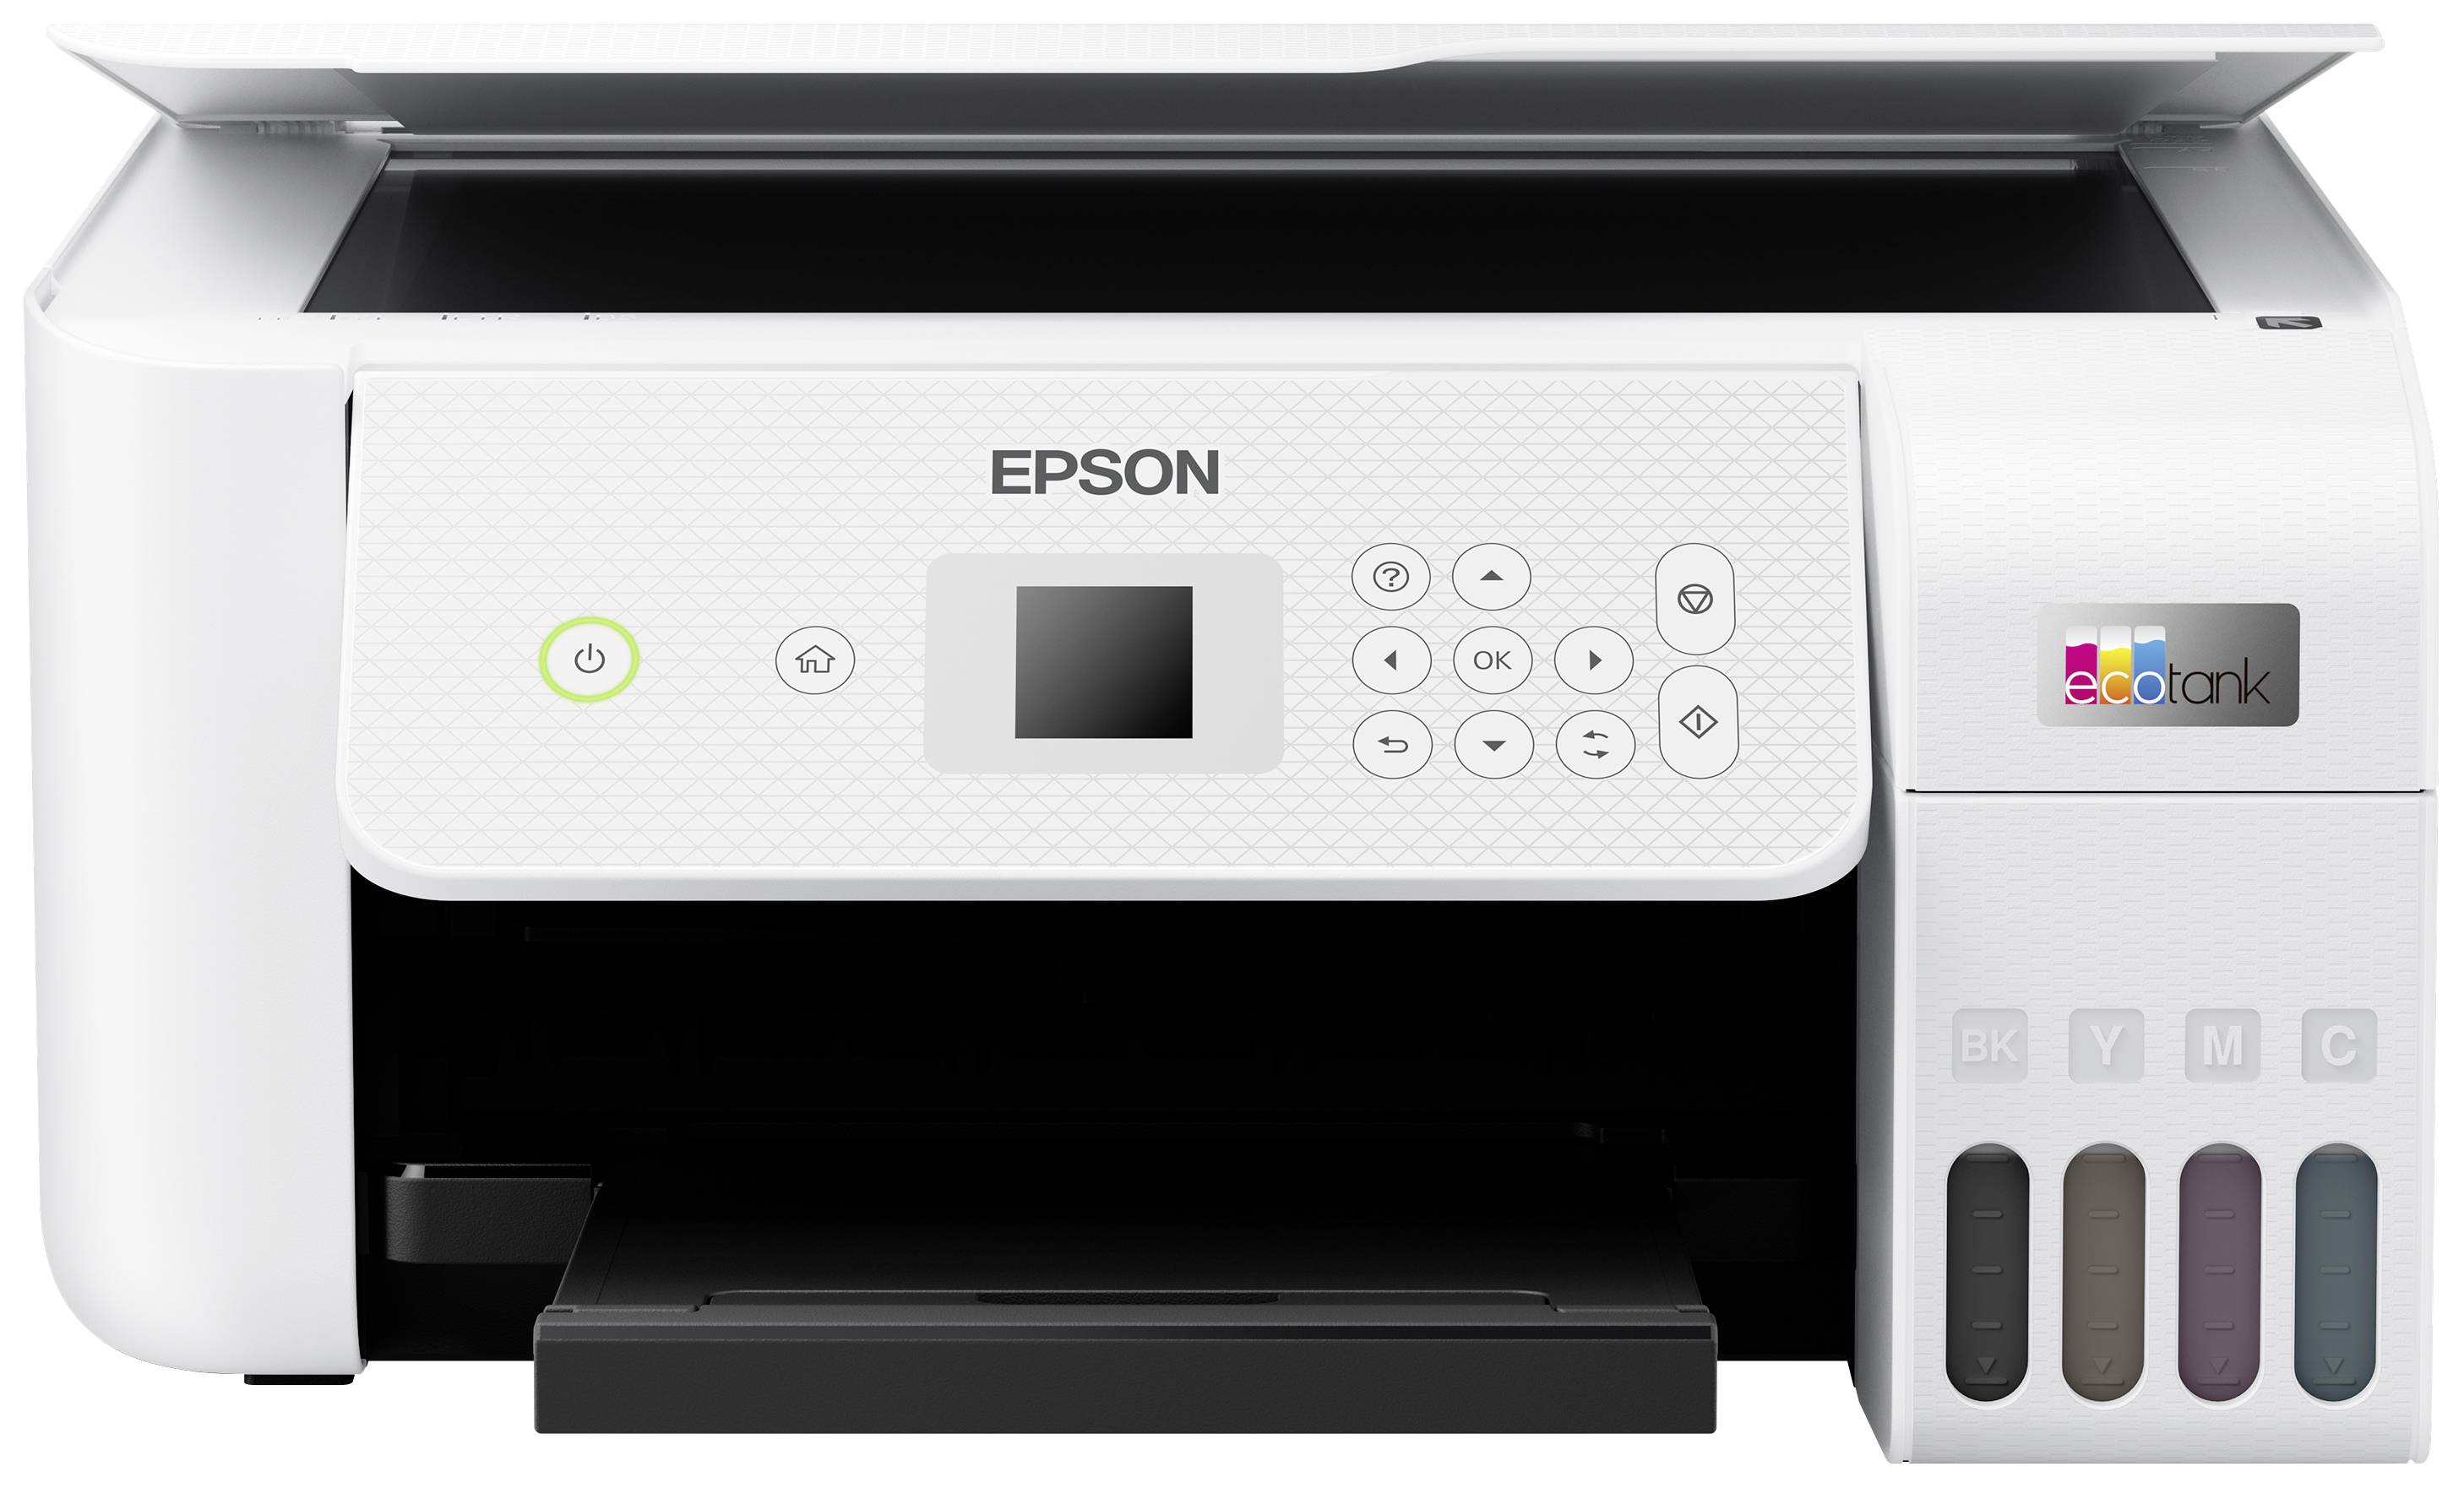 Scanner, USB, EcoTank Duplex, Epson Conrad WLAN Schweiz Drucker, Electronic Kopierer – ET-2826 Tintentank-System, Multifunktionsdrucker A4